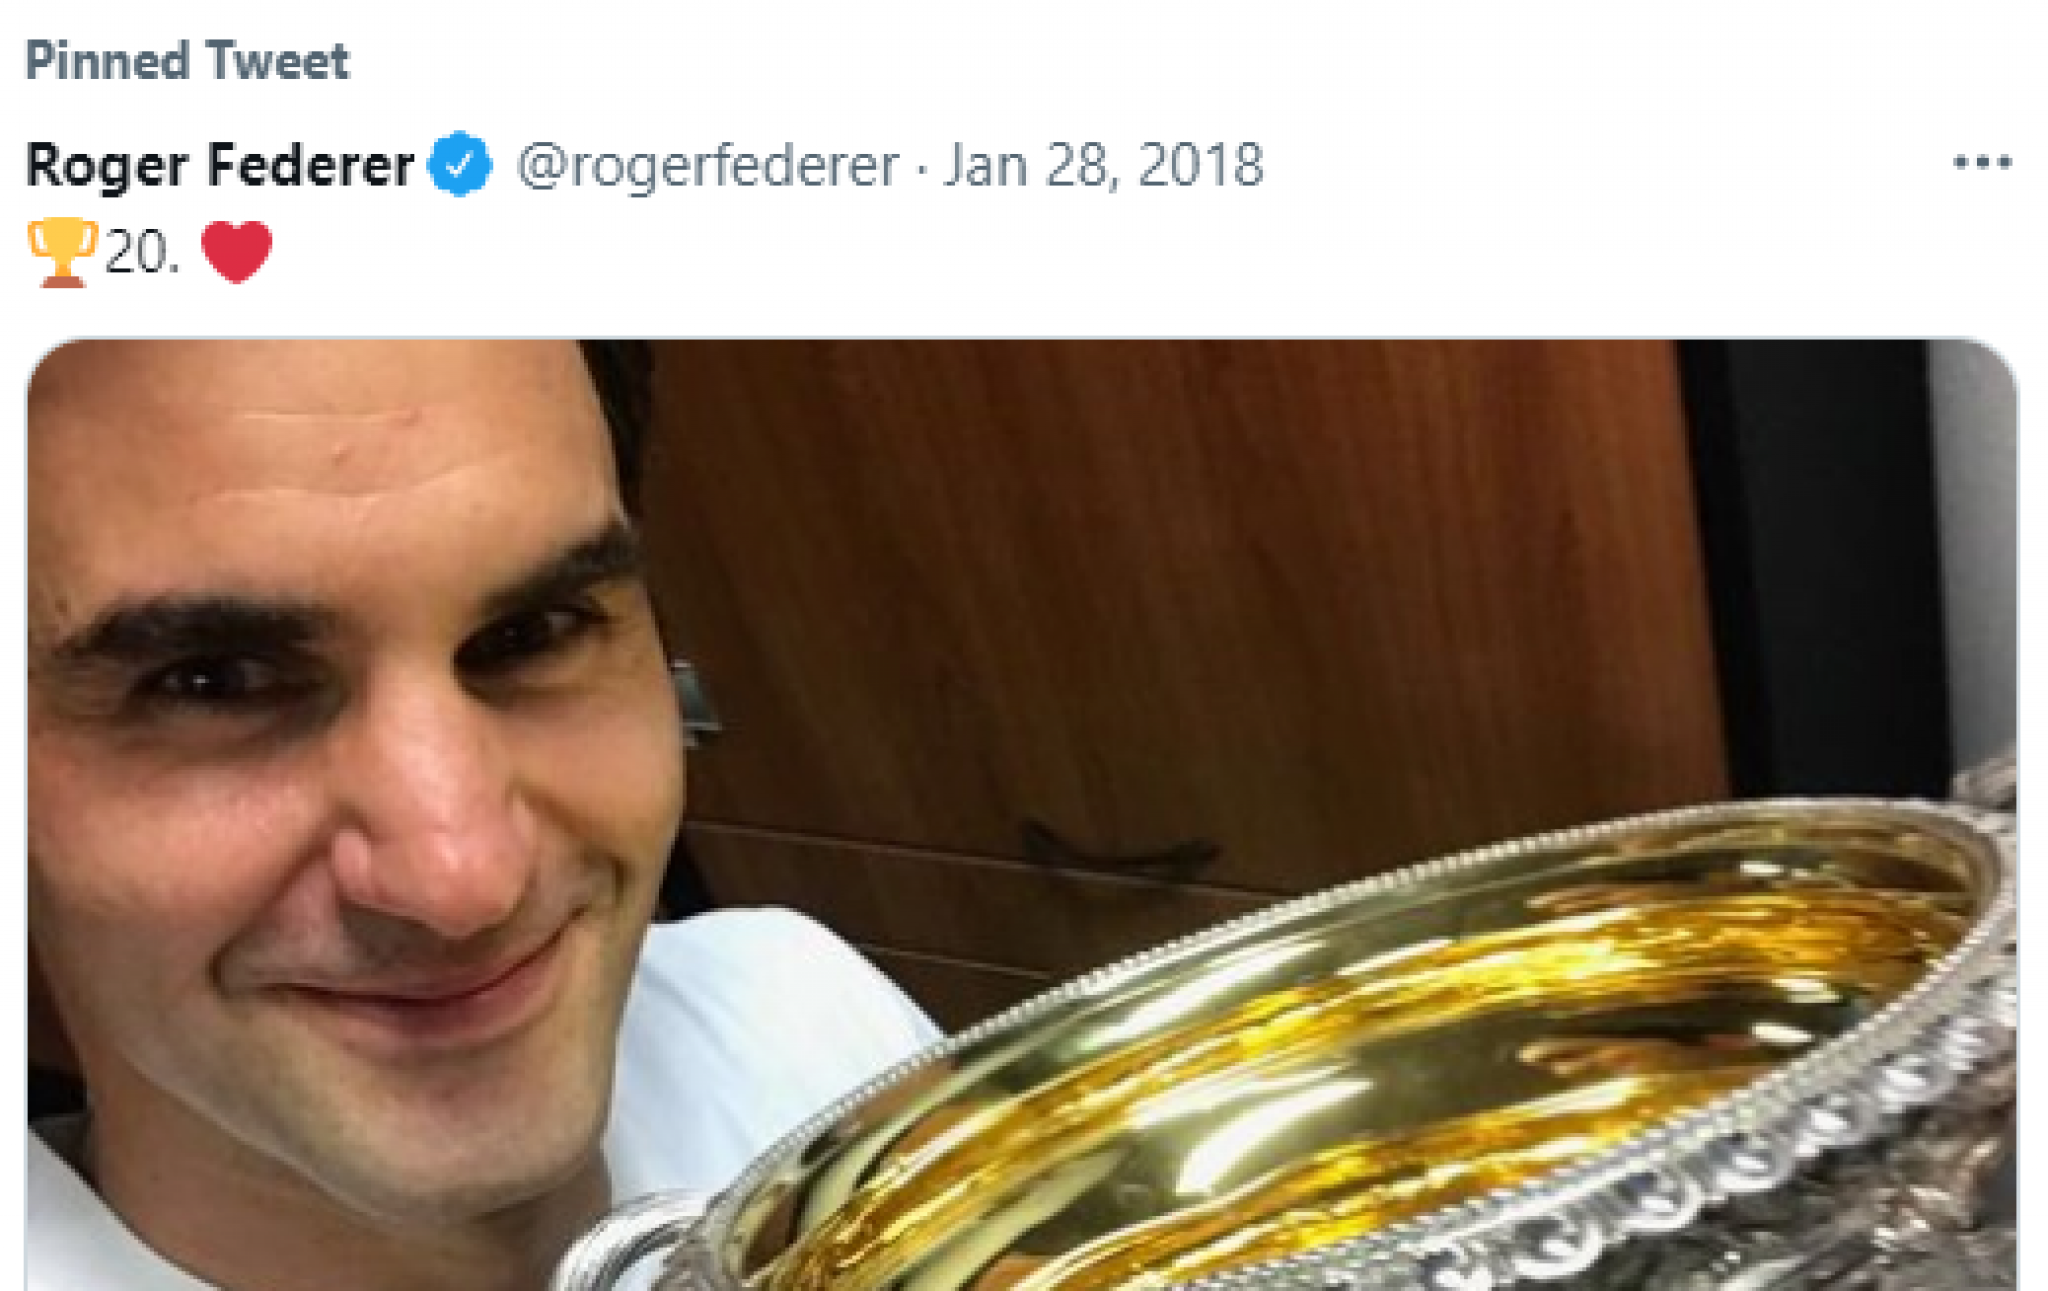 SRAMNE PROVOKACIJE PRED FINALE! Nadal i Federer su OPSEDNUTI Đokovićem, kada ovo vidite sve će vam biti jasno! (FOTO)